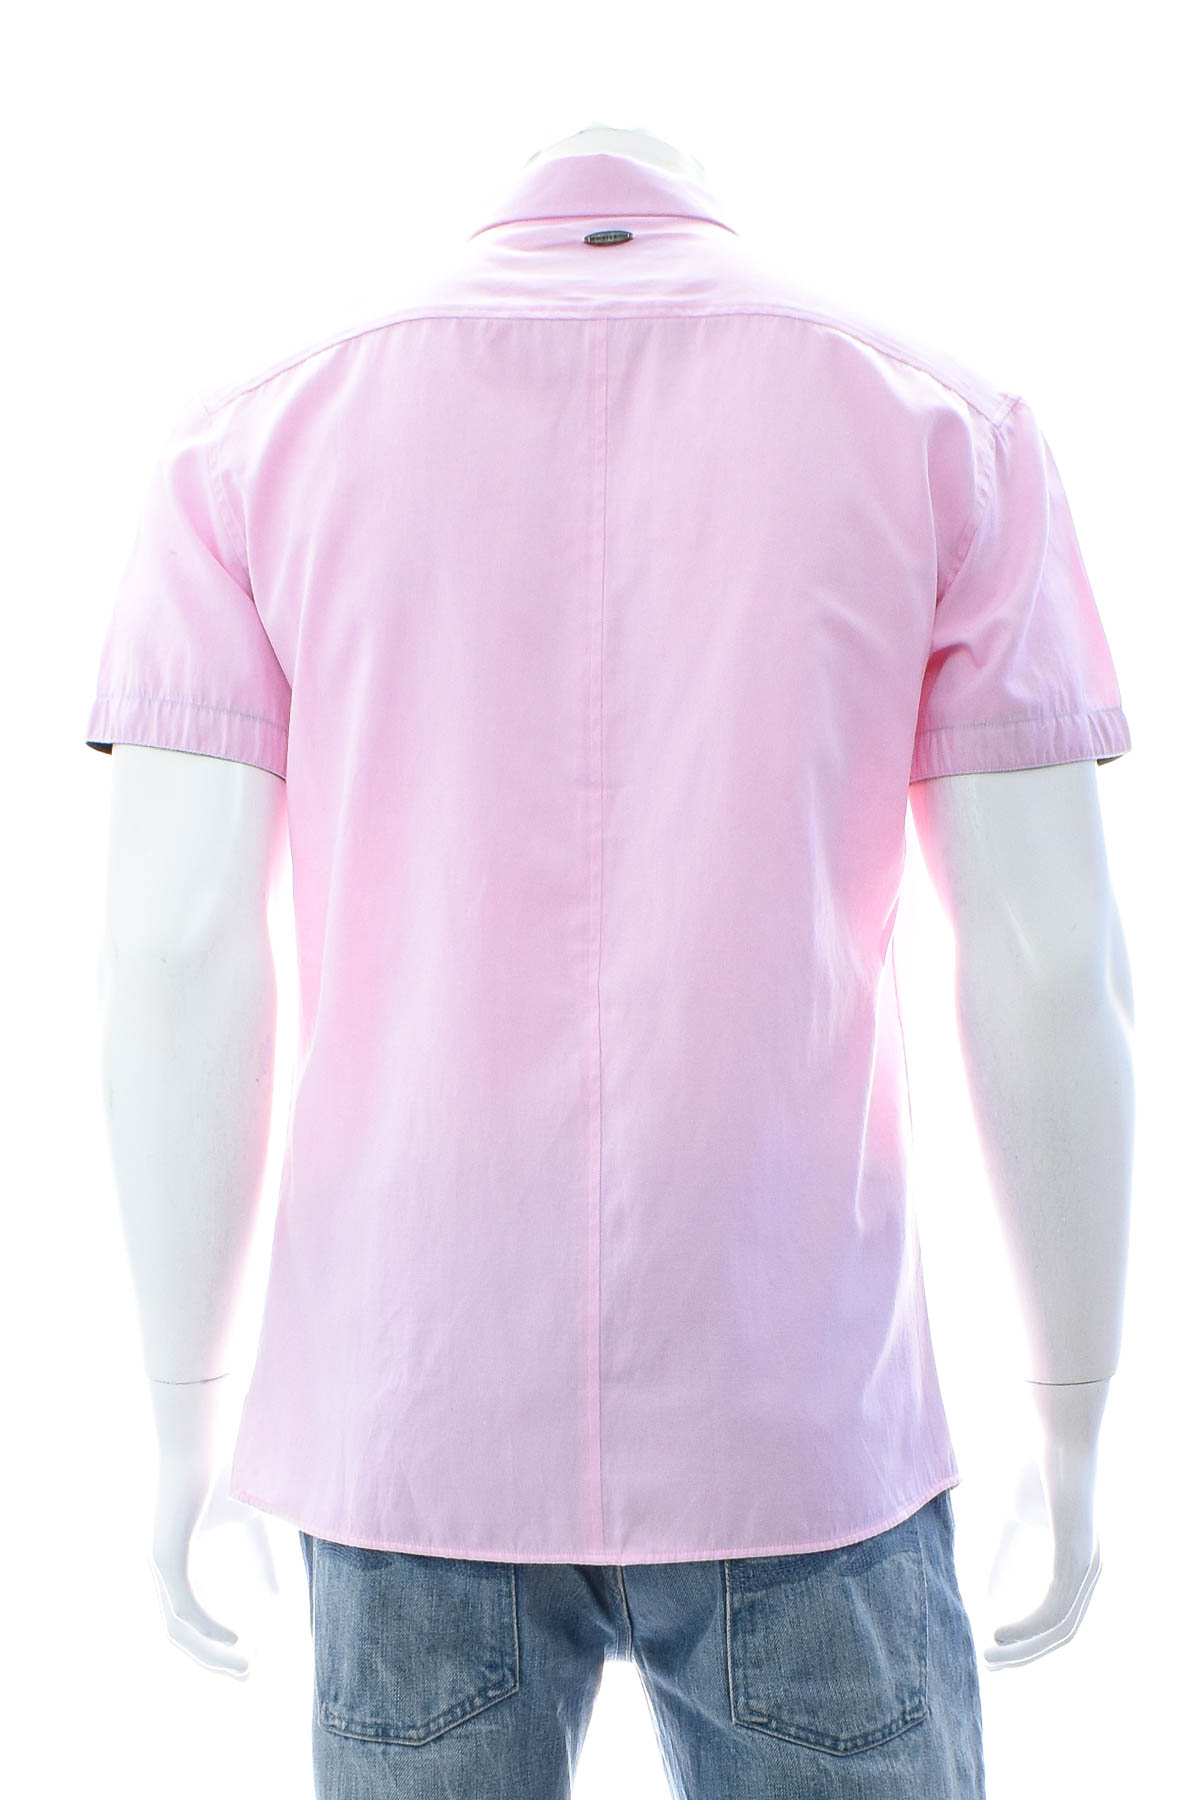 Ανδρικό πουκάμισο - Bewley & Ritch - 1